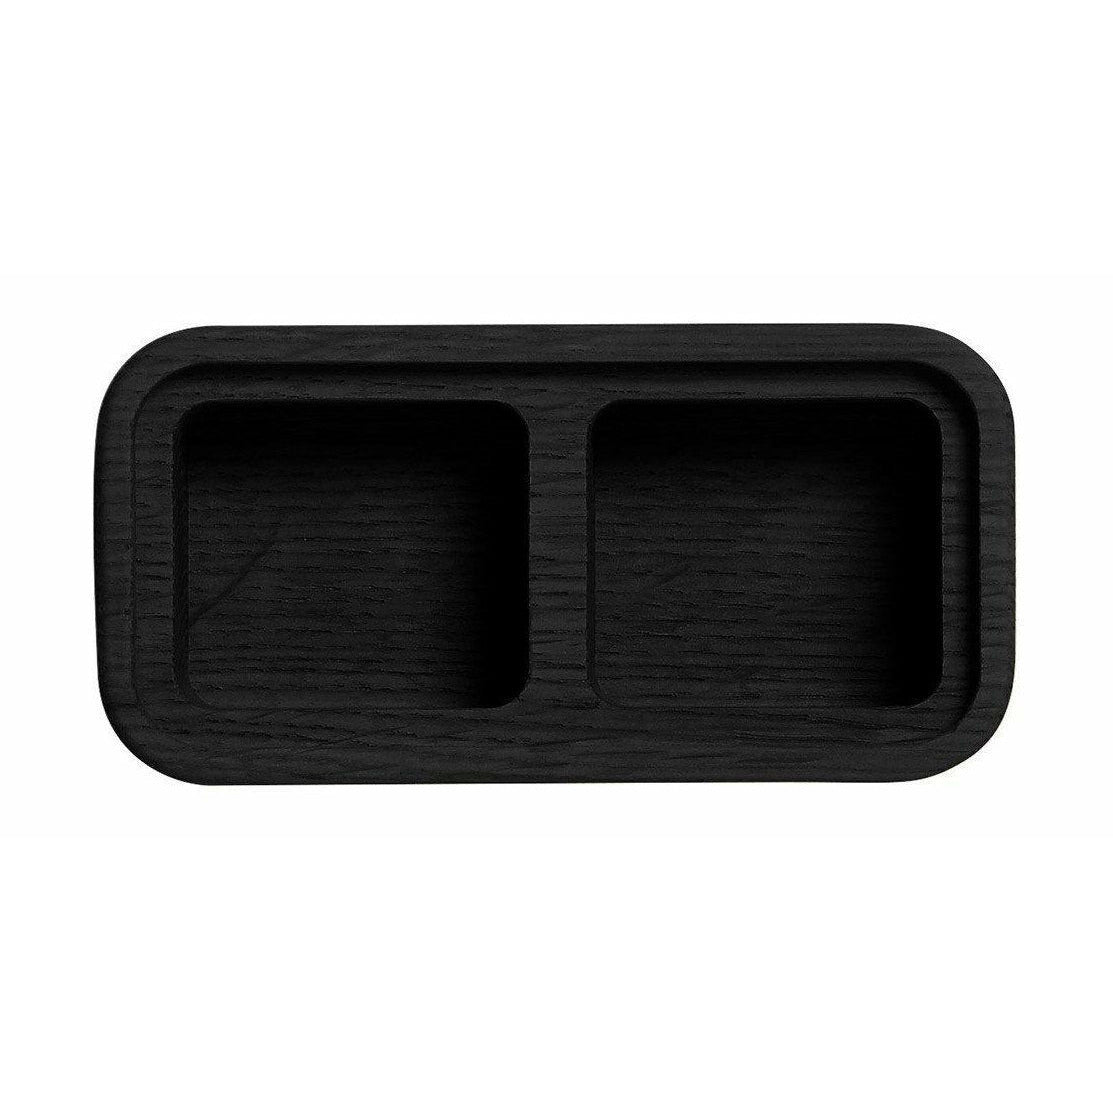 Les meubles Andersen créent une boîte en noir, 2 compartiments, 6x12cm